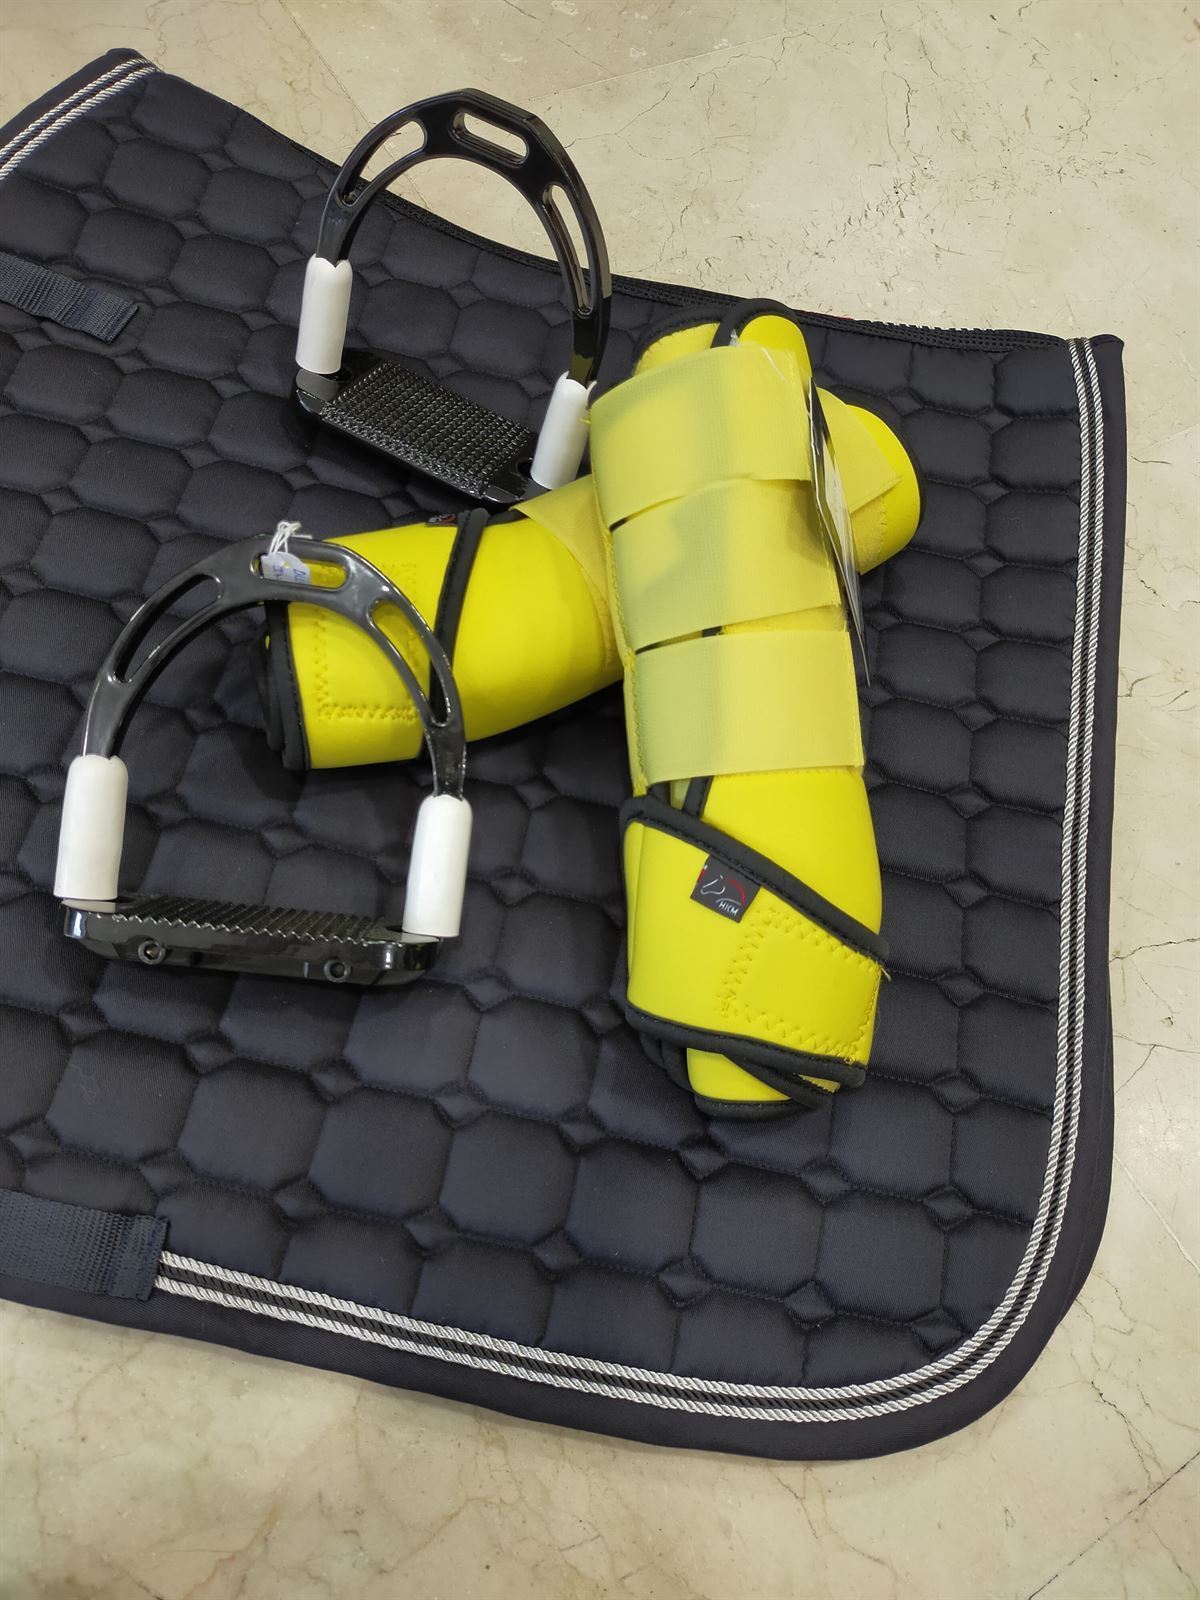 Protectores HKM Sports Equipment de softopren amarillo talla XL (par) - Imagen 2